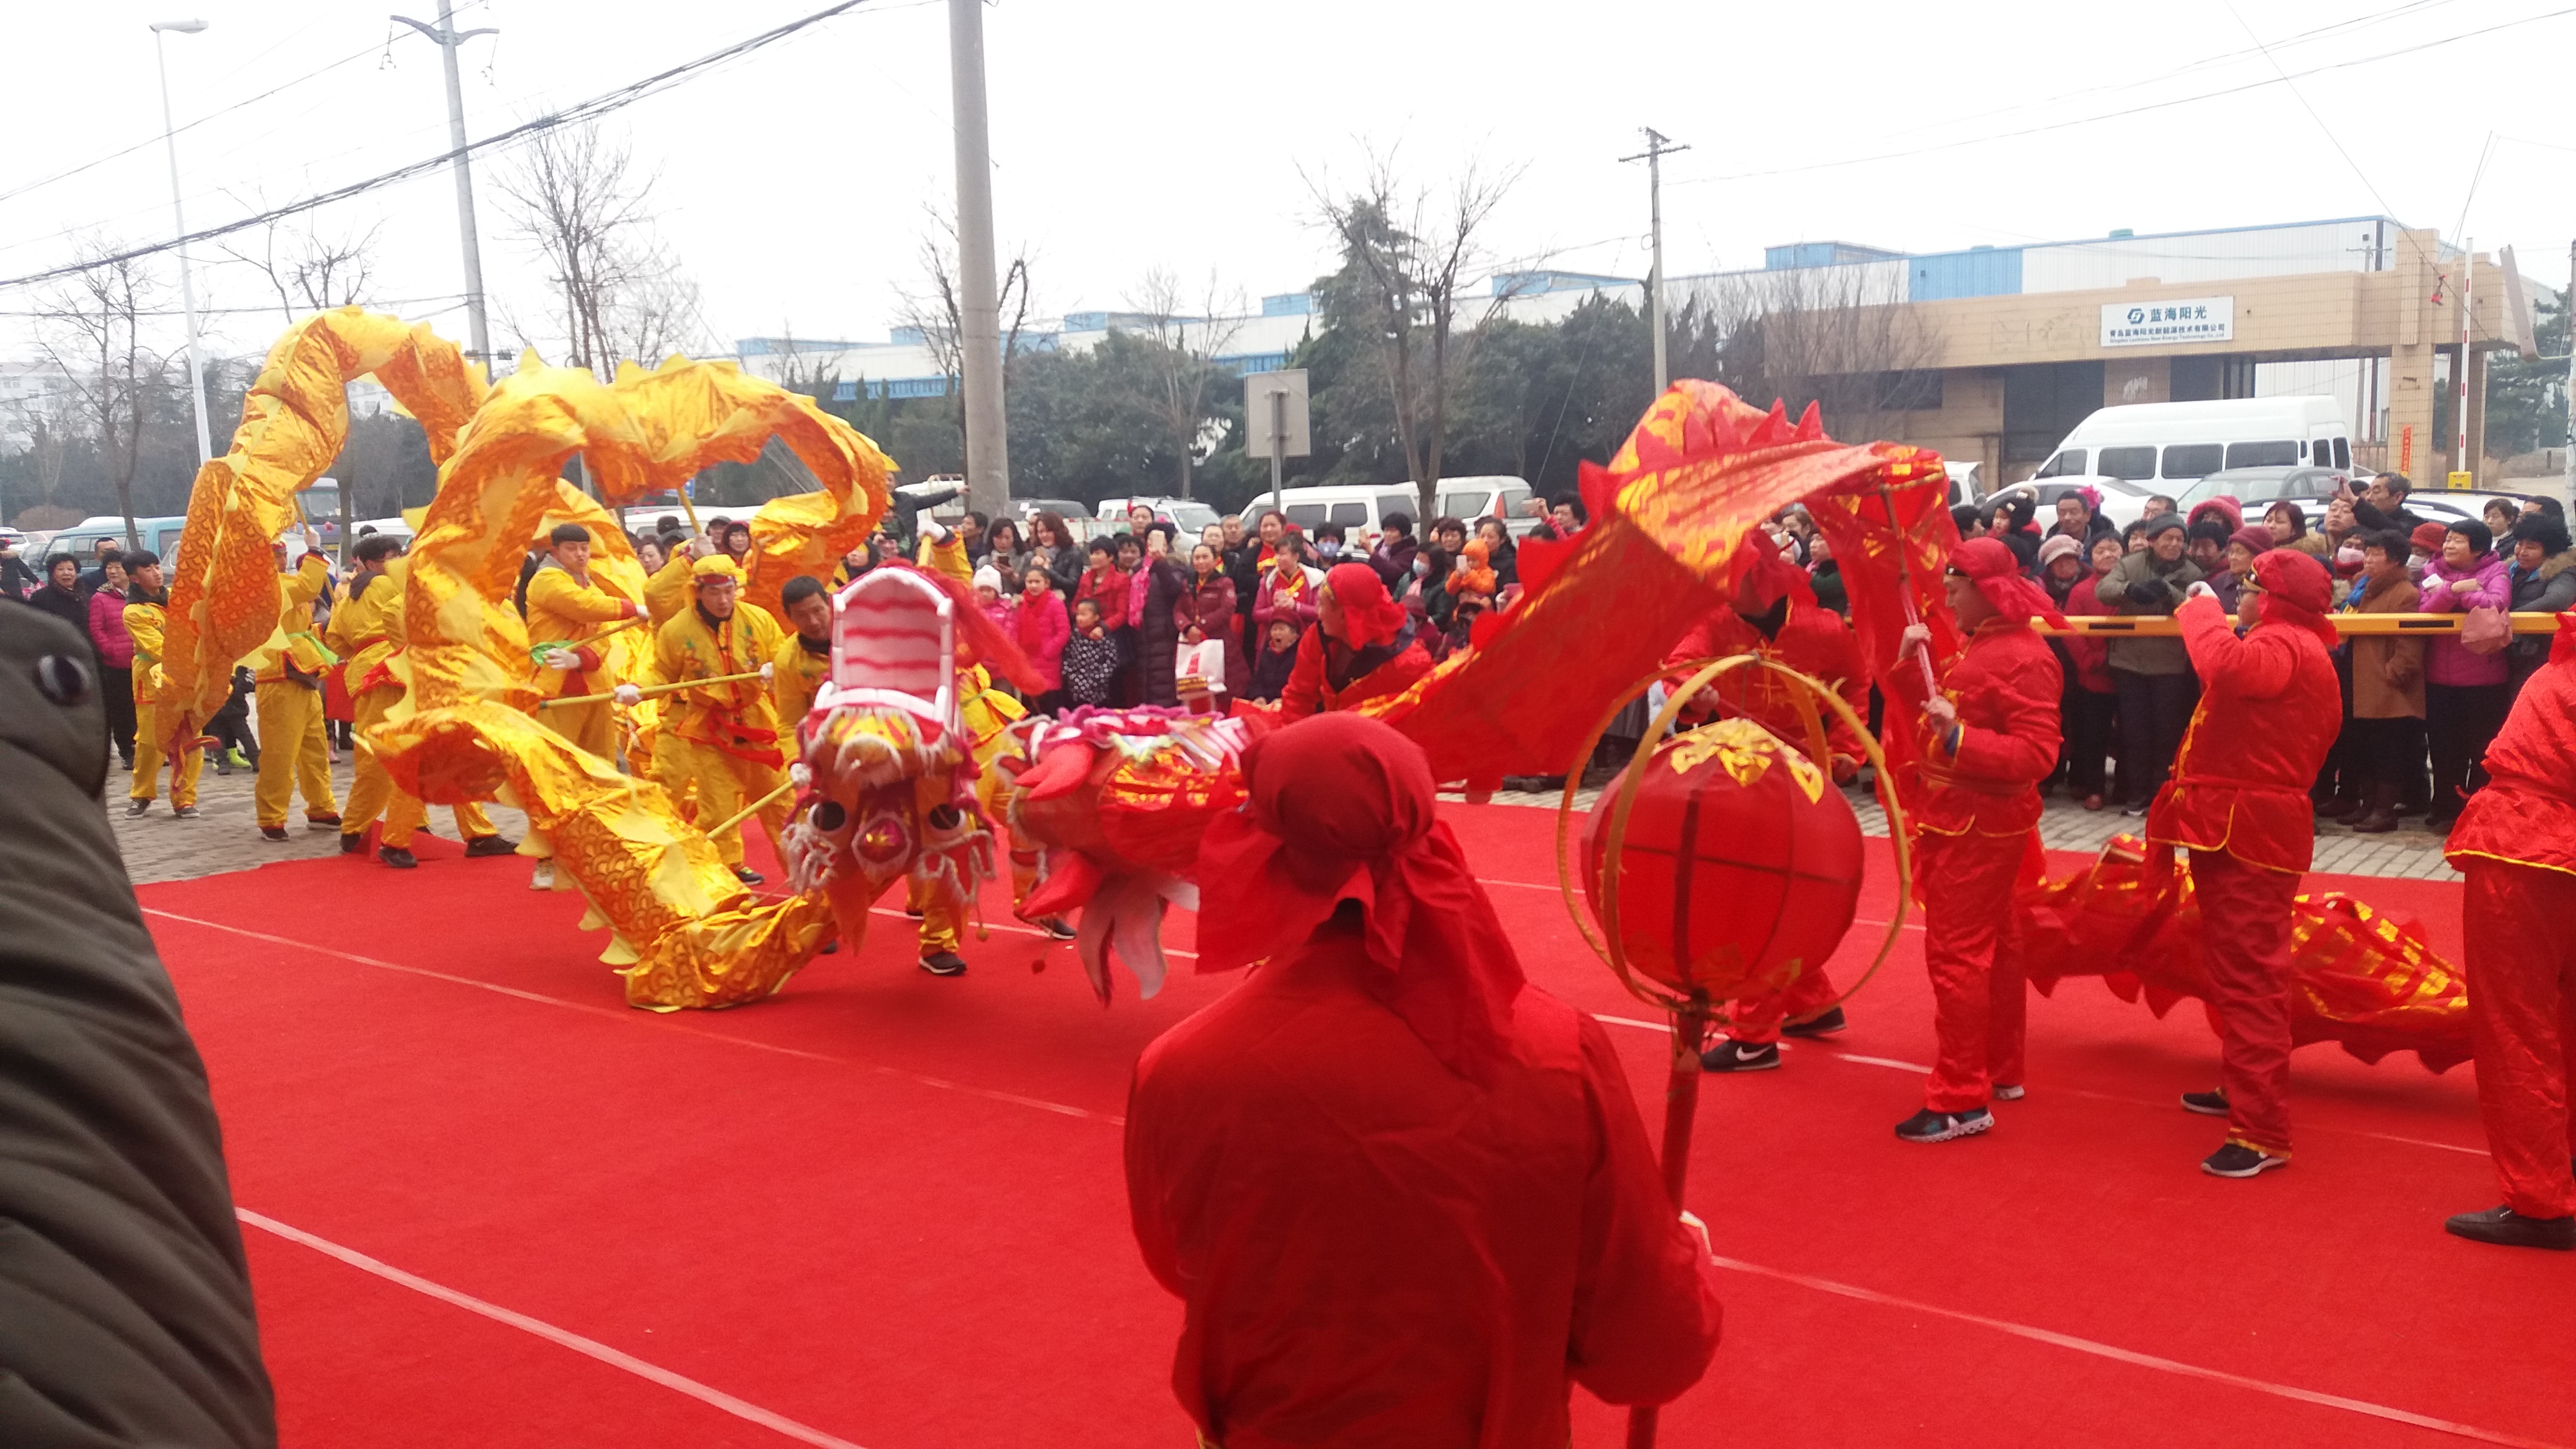 锣鼓响歌声飘 青岛各社区春节文化活动精彩纷呈